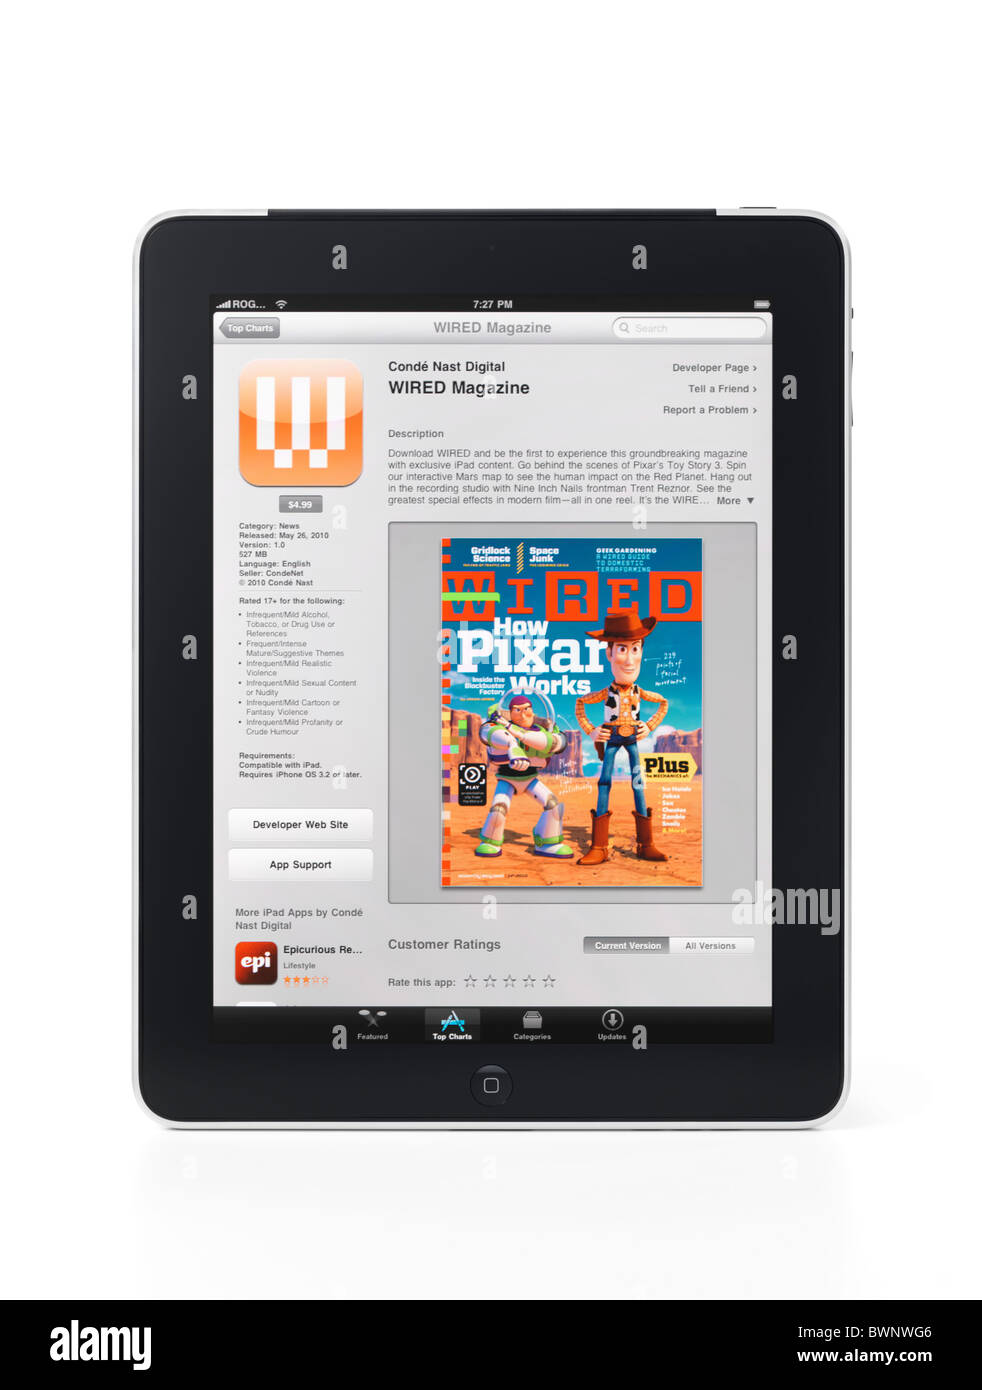 Tablette Apple iPad 3G avec le magazine WIRED app sur son affichage isolé sur fond blanc avec clipping path Banque D'Images